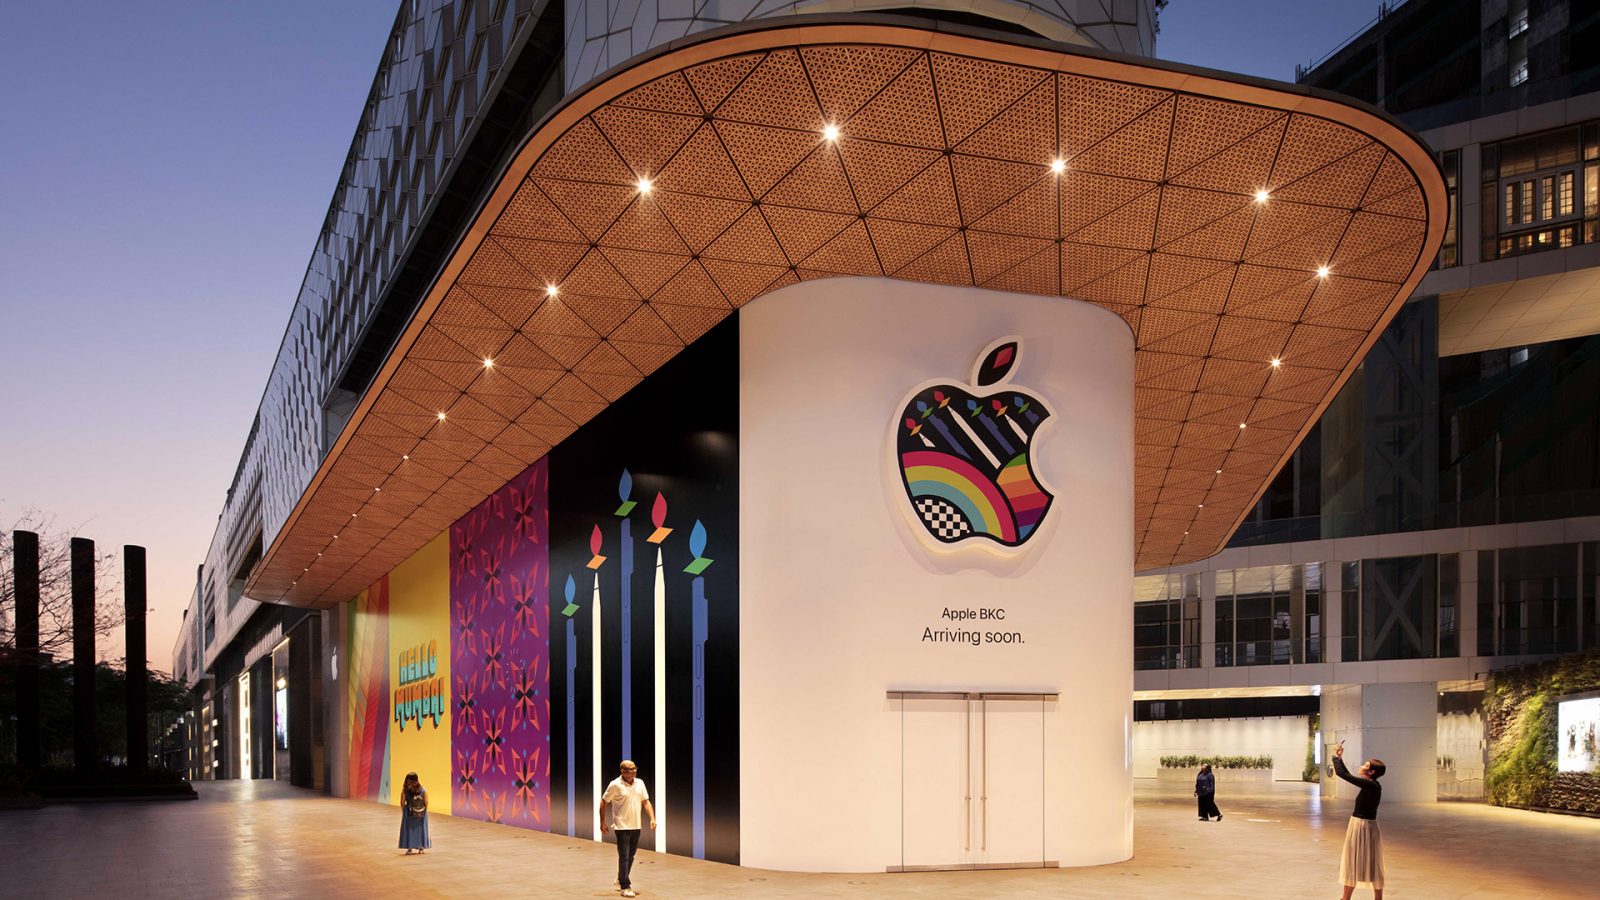 Apple представляет баррикаду своего первого розничного магазина в Индии перед открытием в этом месяце